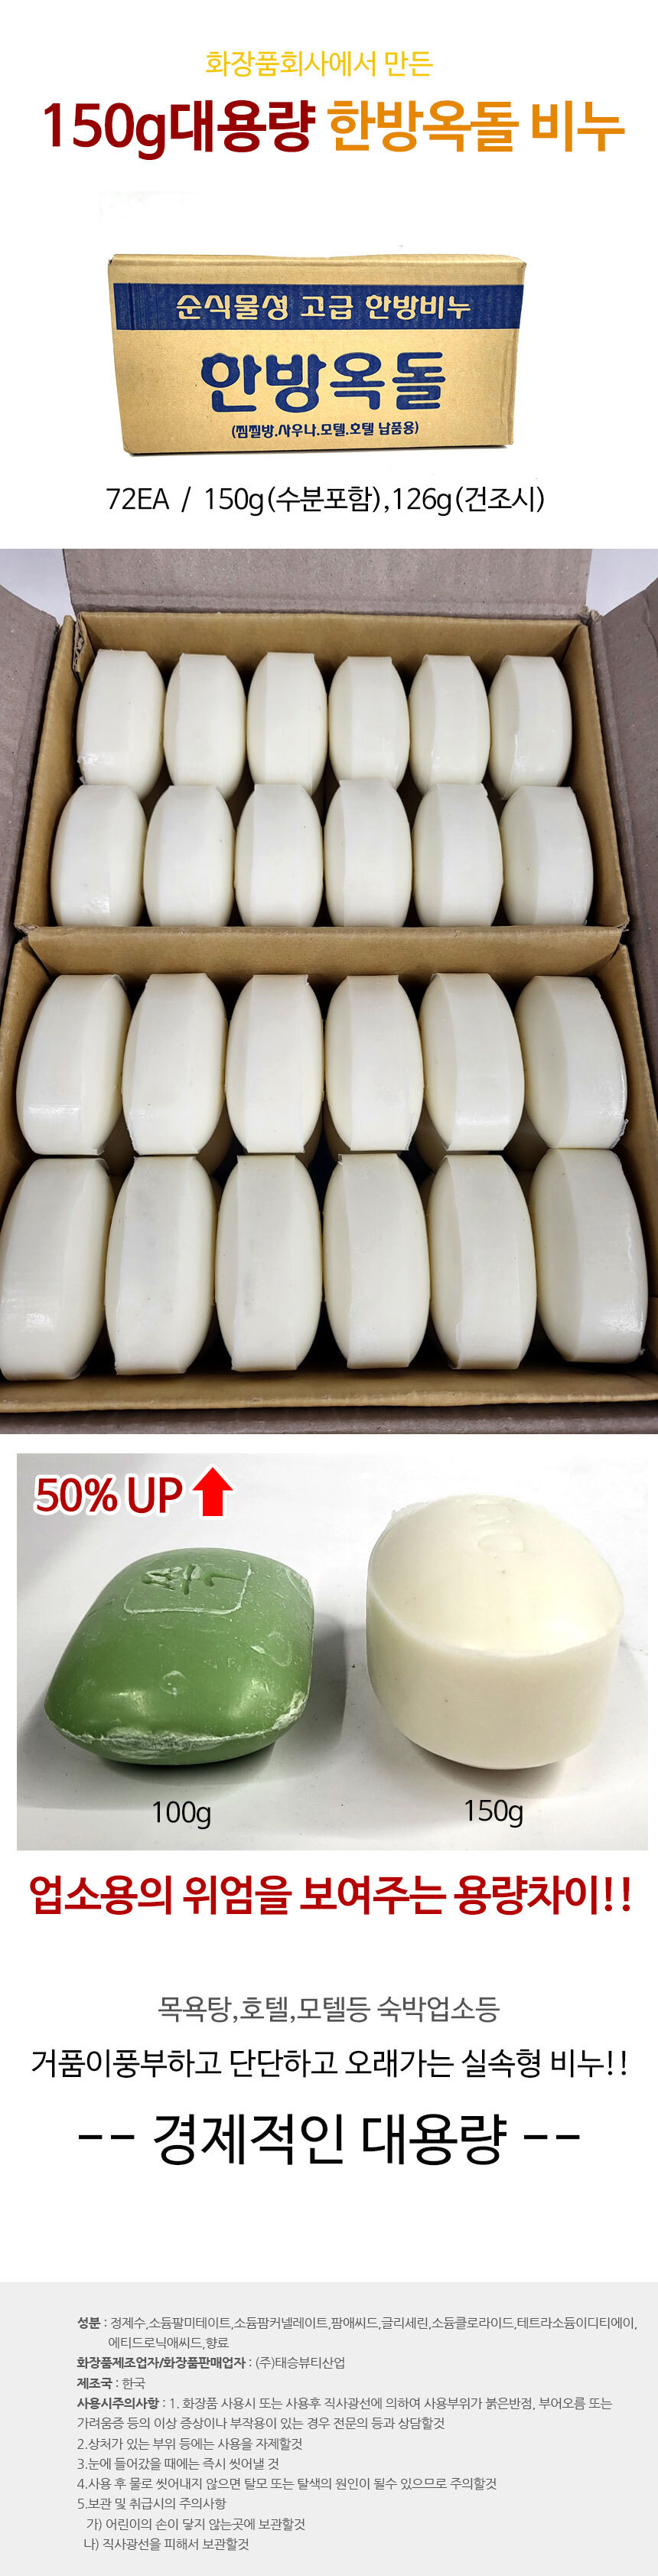 150g-soap.jpg